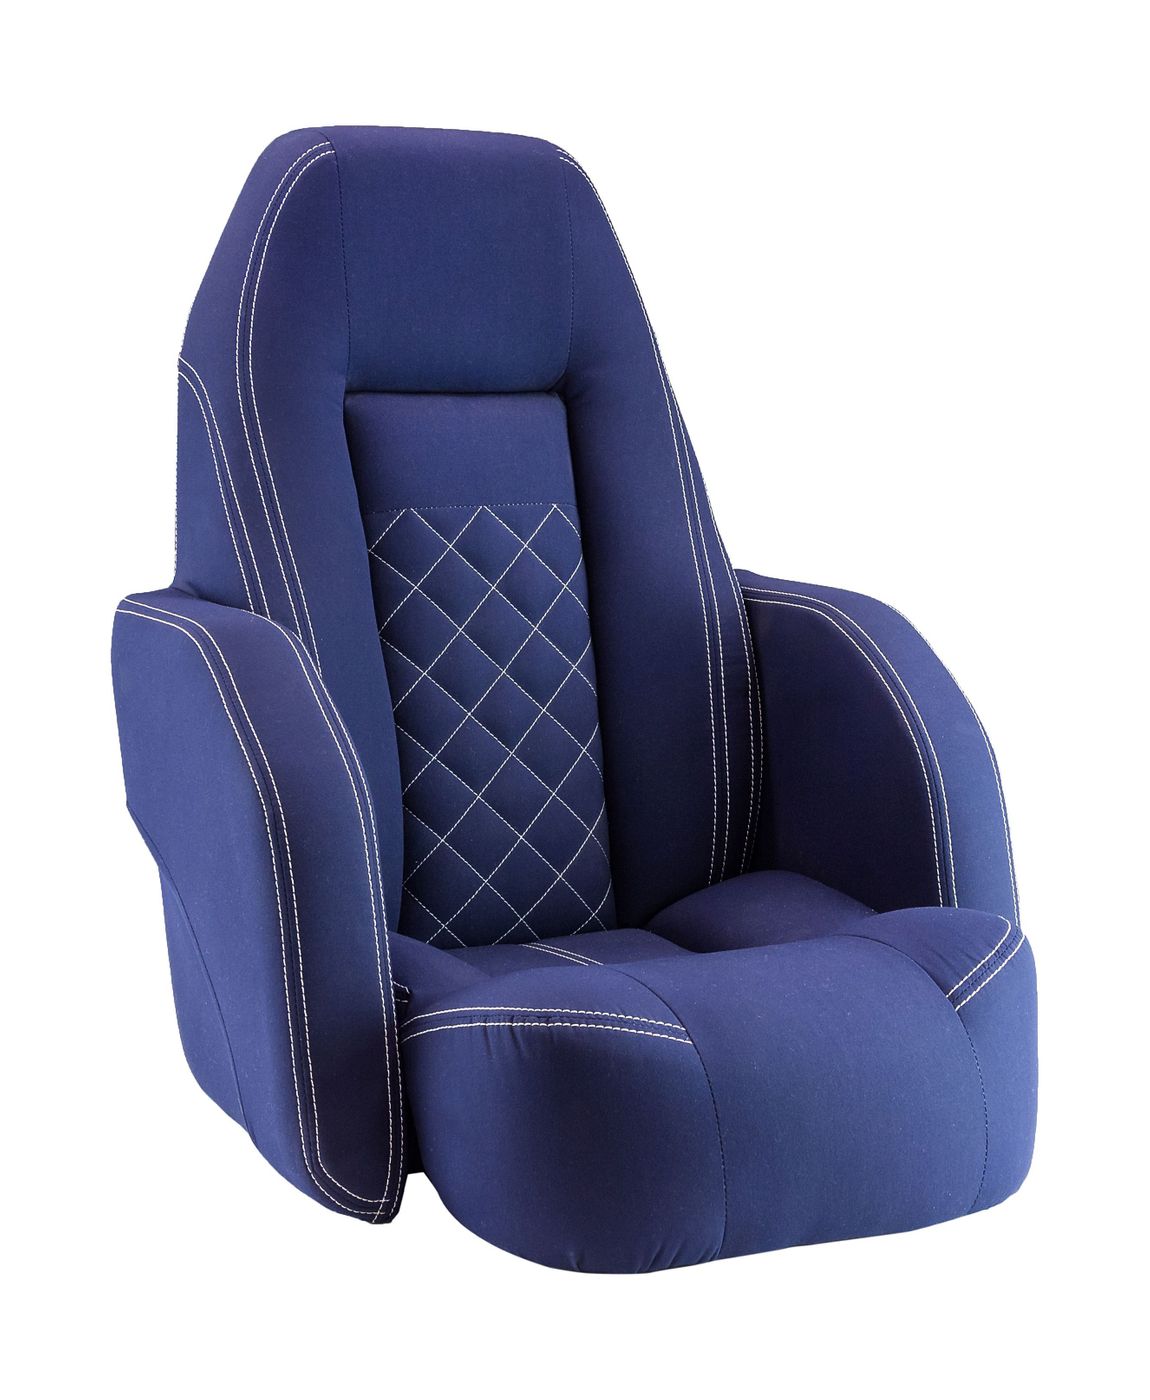 Кресло ROYALITA мягкое, подставка, обивка ткань Markilux темно-синяя 570000395 кресло royalita мягкое подставка обивка ткань markilux темно синяя 570000395